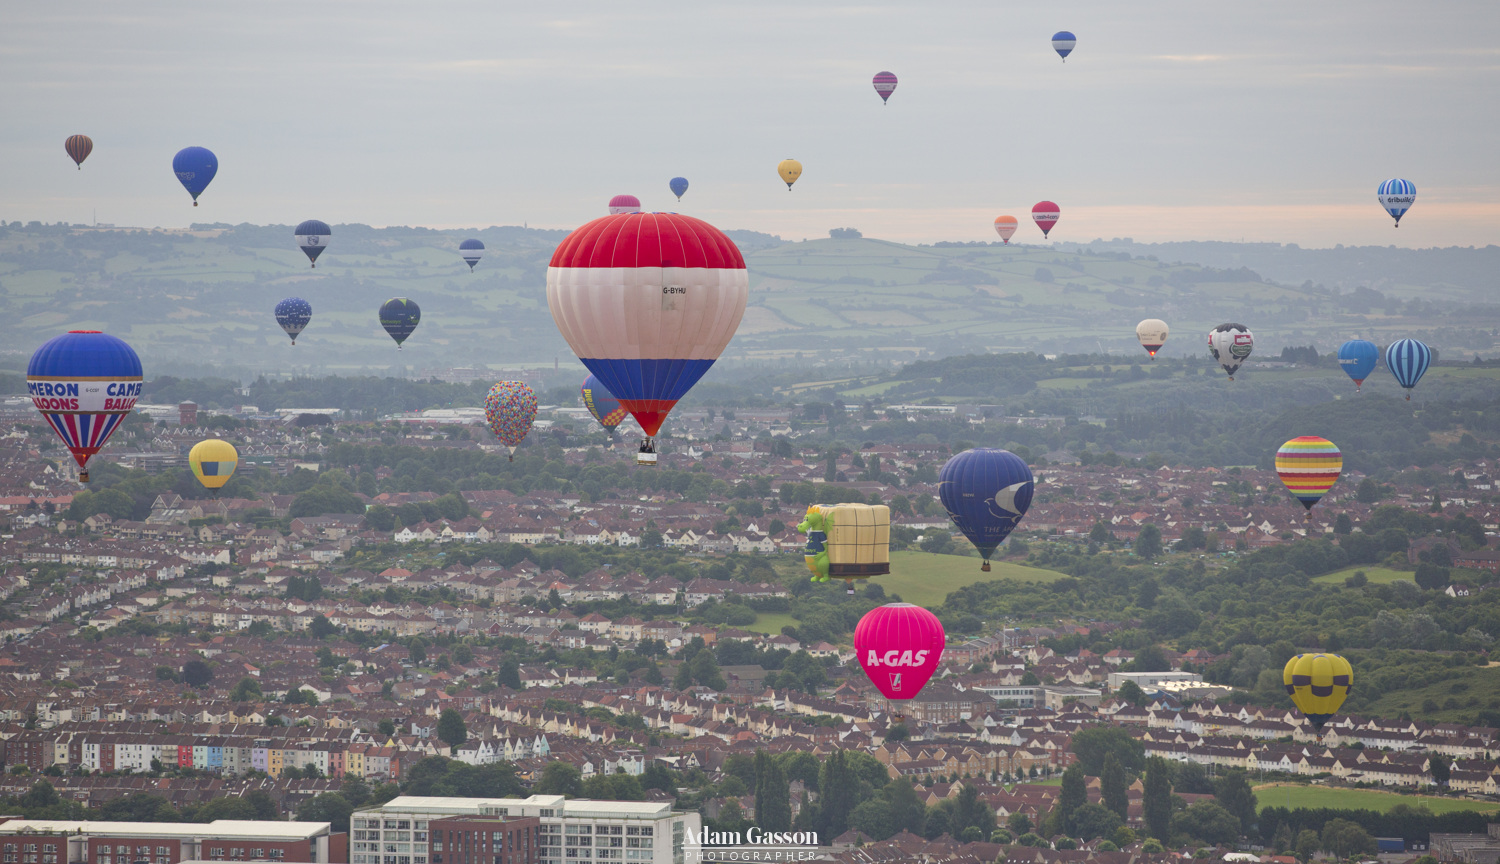 Bristol Balloon Fiesta photos